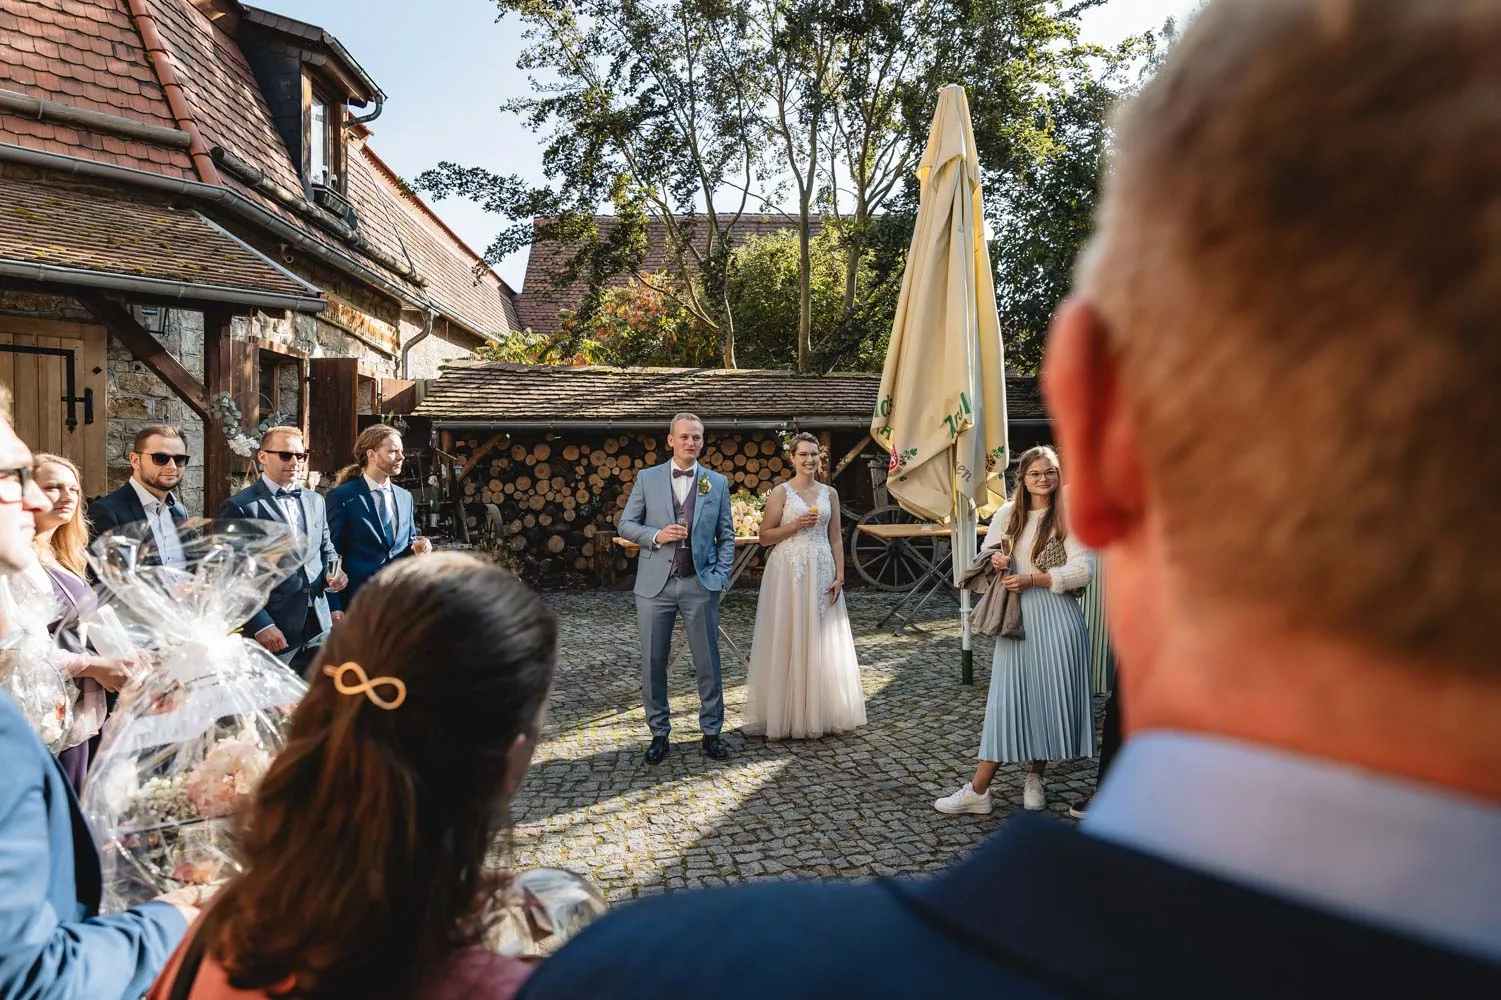 Hochzeit in Thüringen, Hochzeitsfotograf Andreas Balg aus Jena, Foto von einer kirchlichen Hochzeit, 